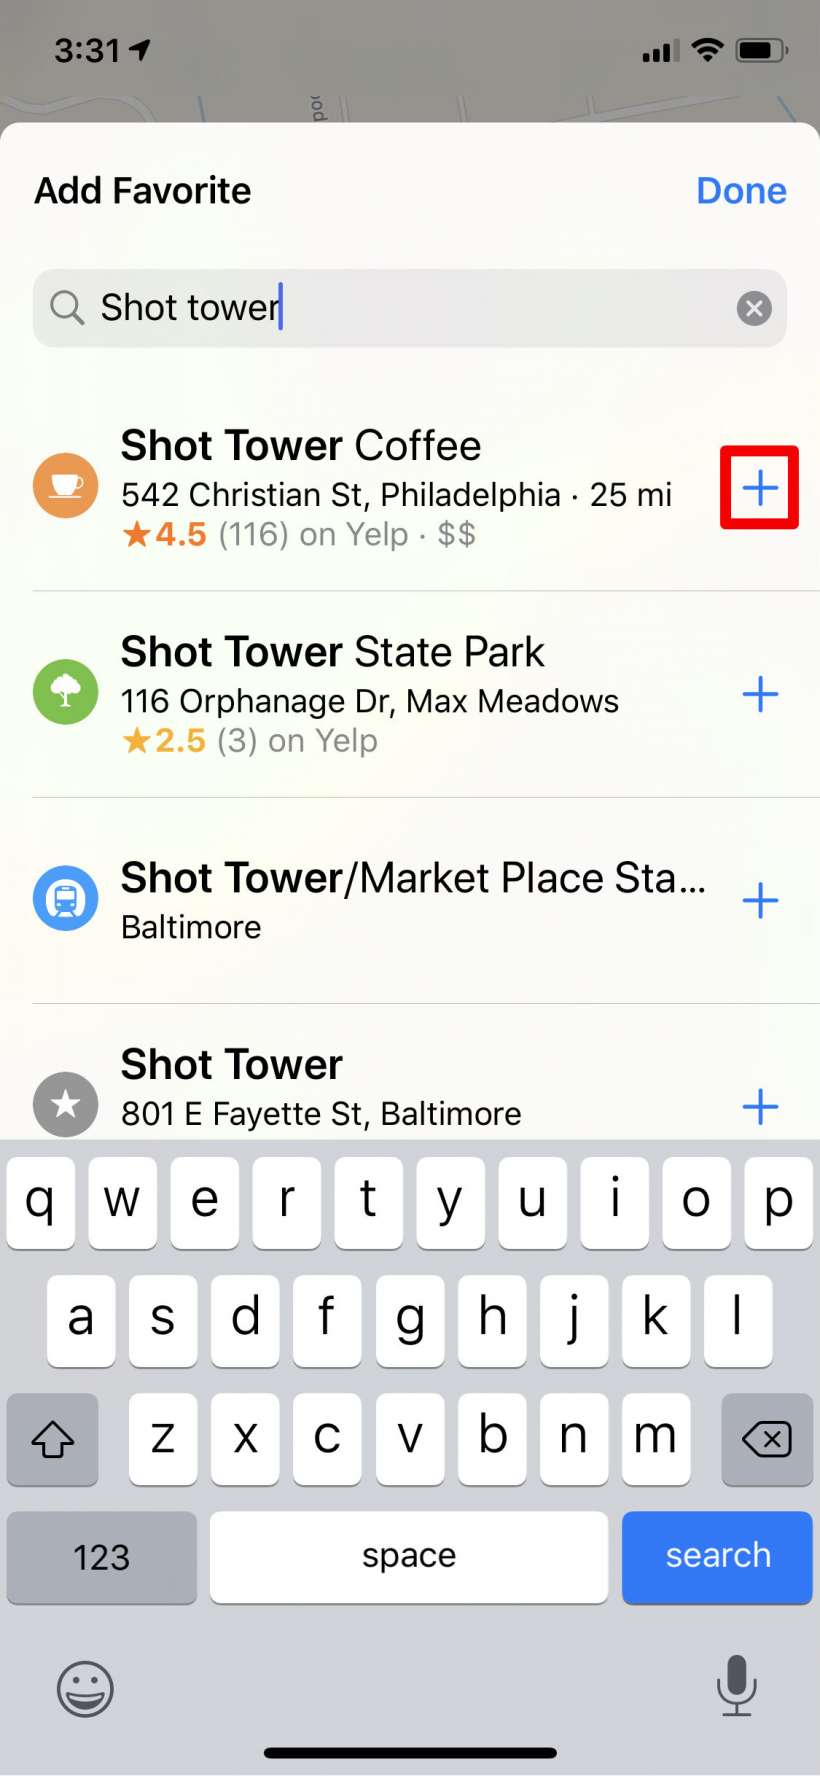 Cómo establecer ubicaciones preferidas y hacer colecciones a Apple Maps iPhone y iPad.